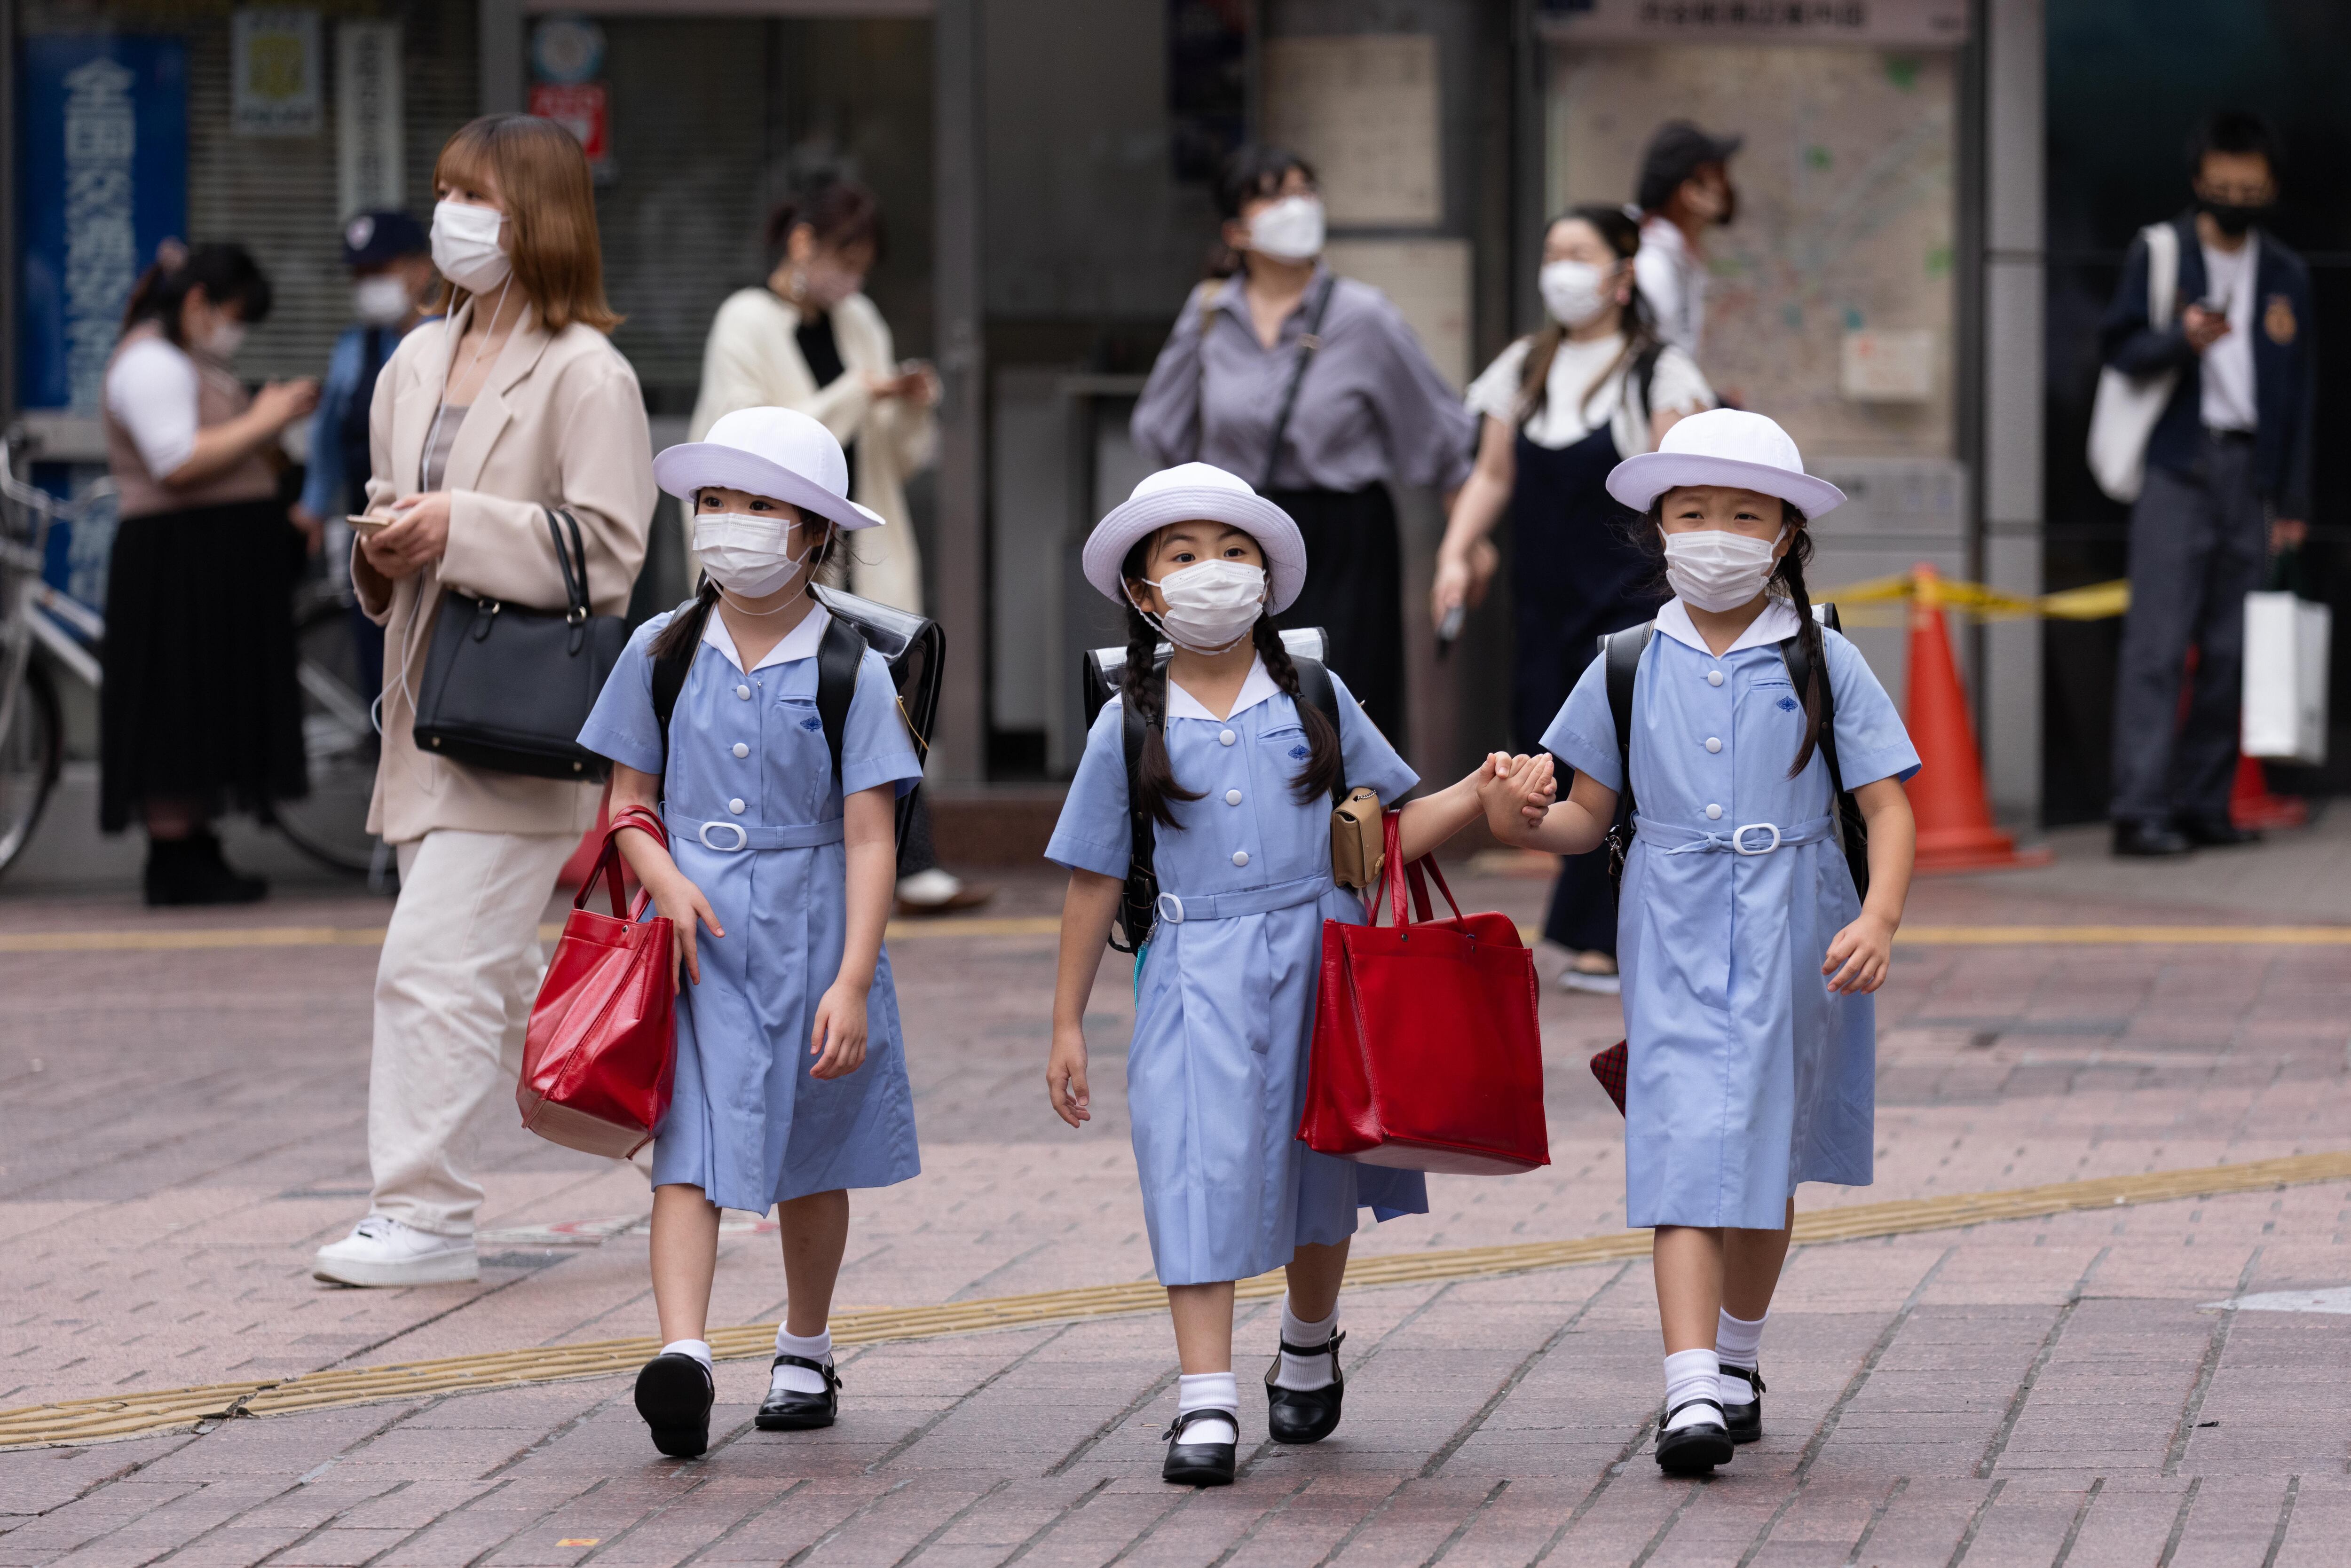 Niñas con mascarillas como medida preventiva contra la propagación del COVID-19 caminan por las calles de Shibuya, en Tokio, Japón. Europa Press/Contacto/Stanislav Kogiku/Archivo